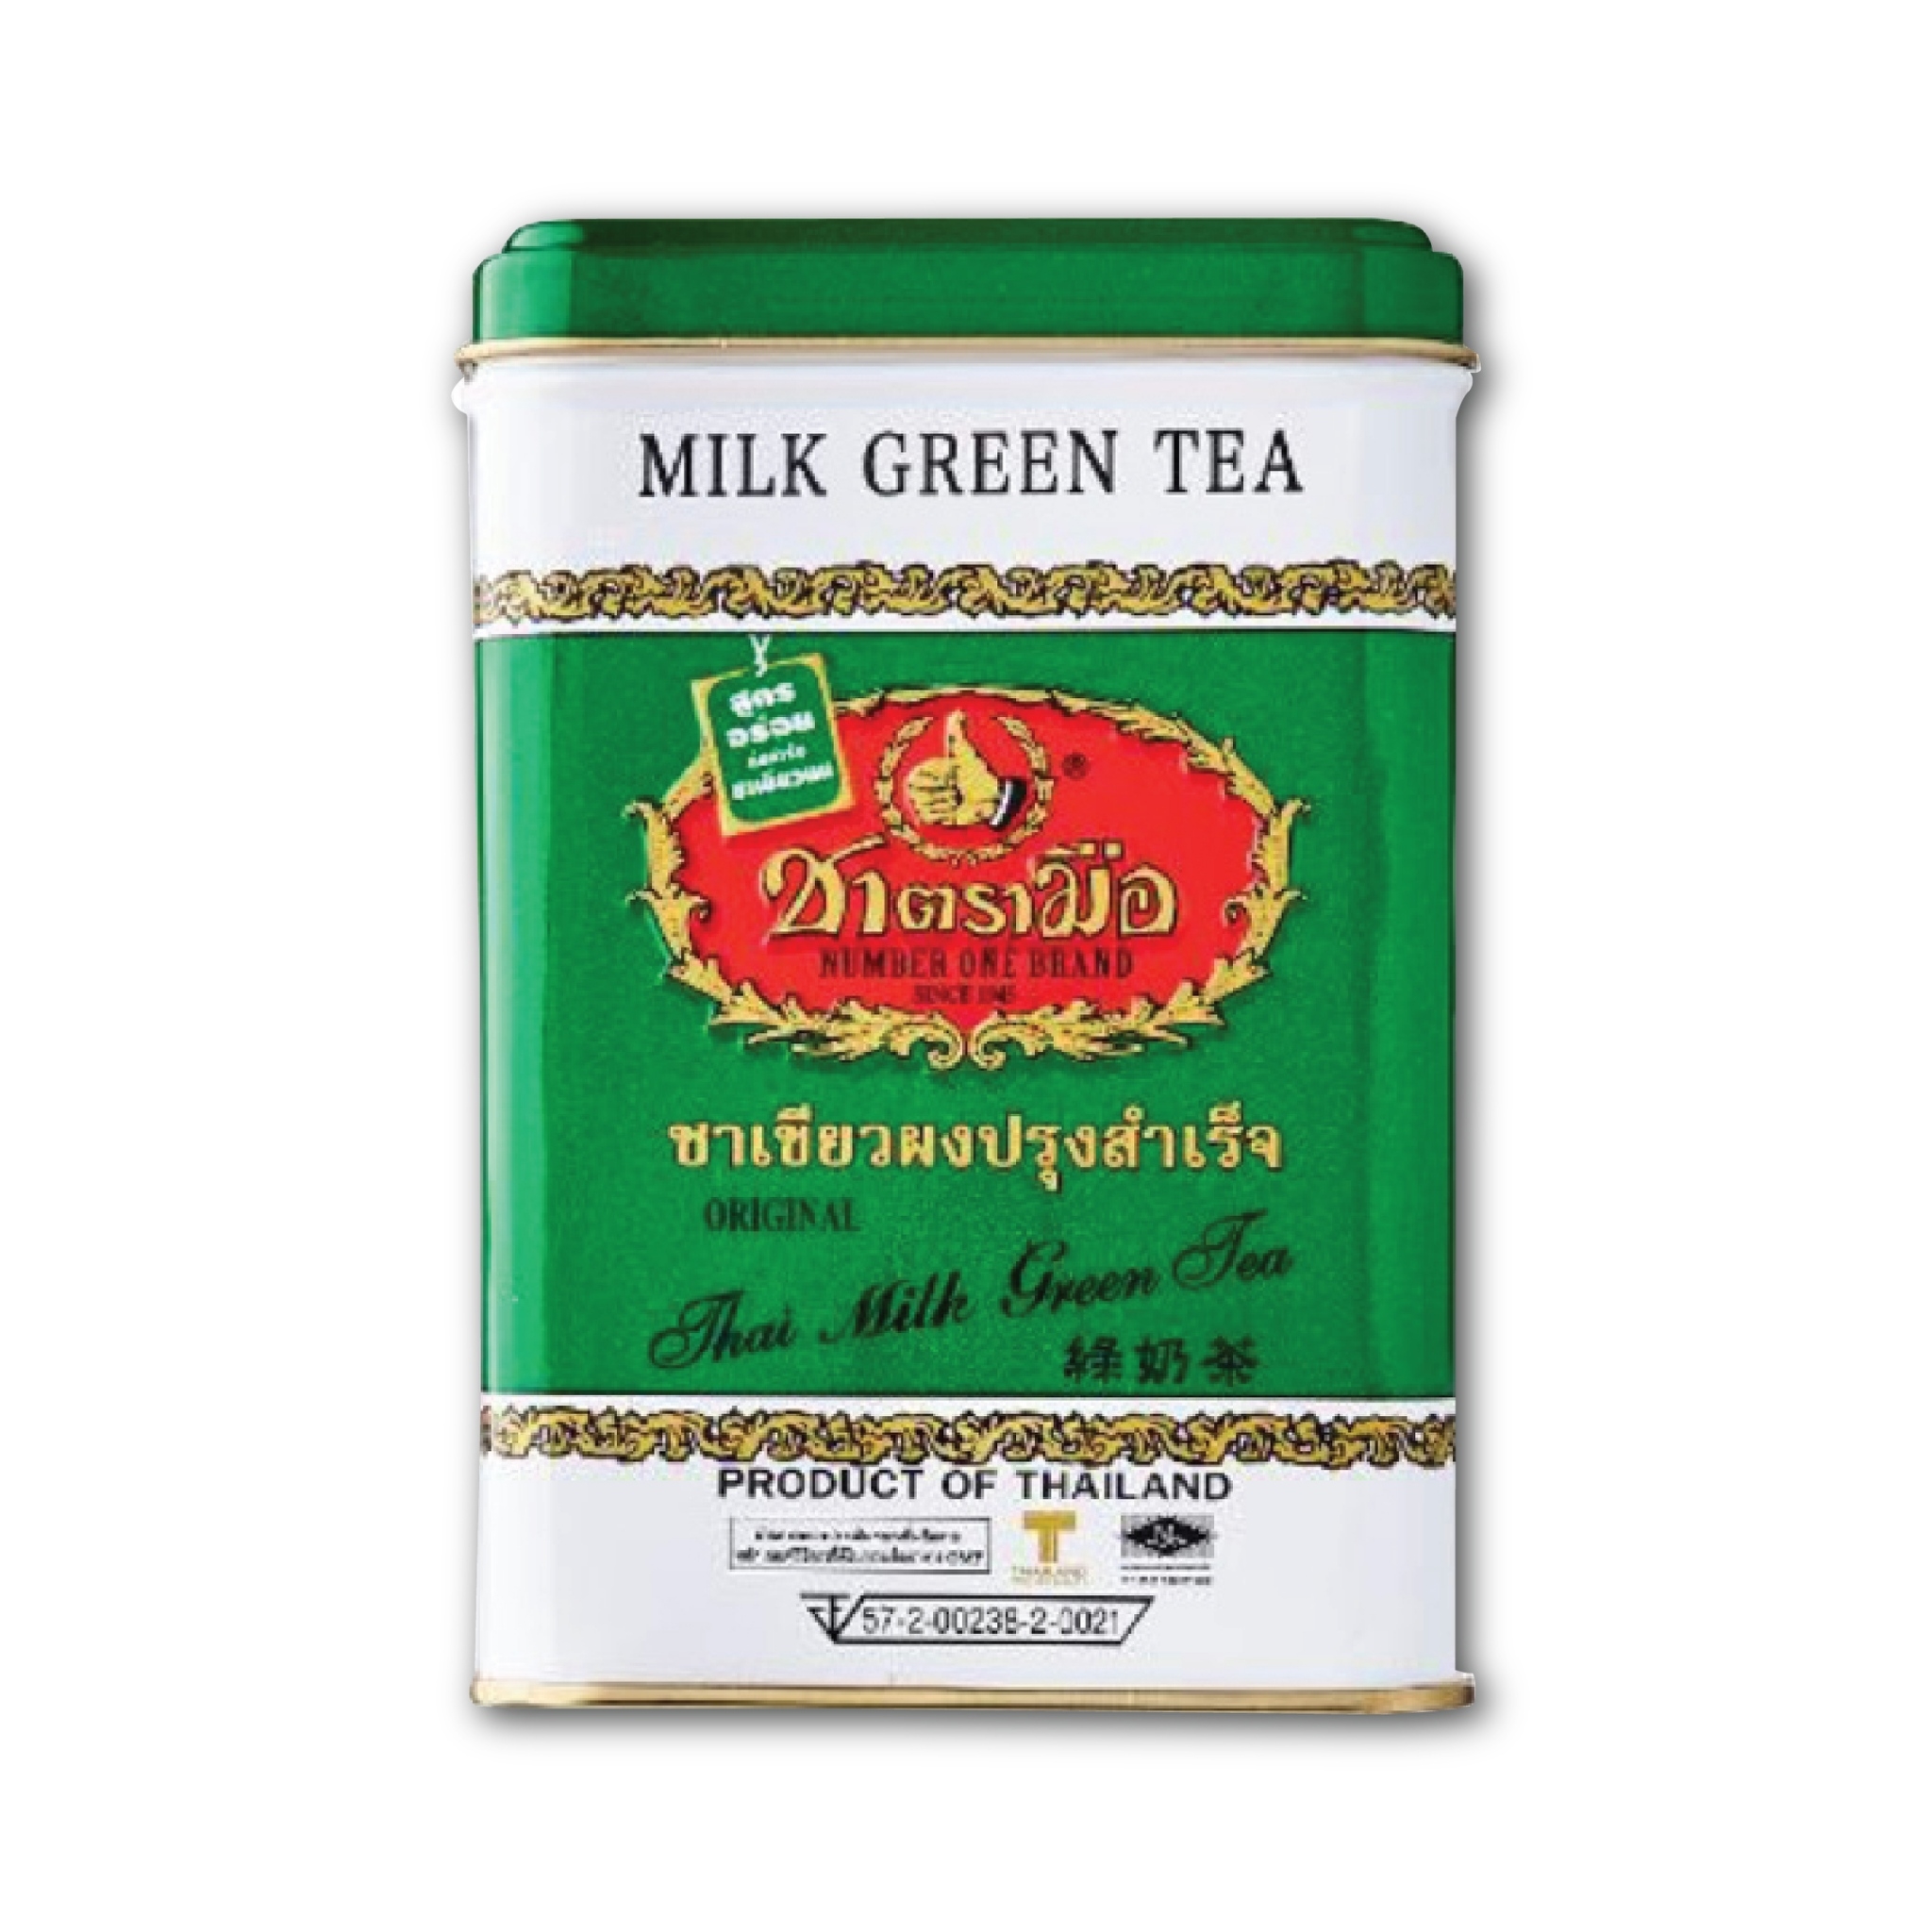 タイ式紅茶 チャトラムー 緑缶 50 Tea bag入り